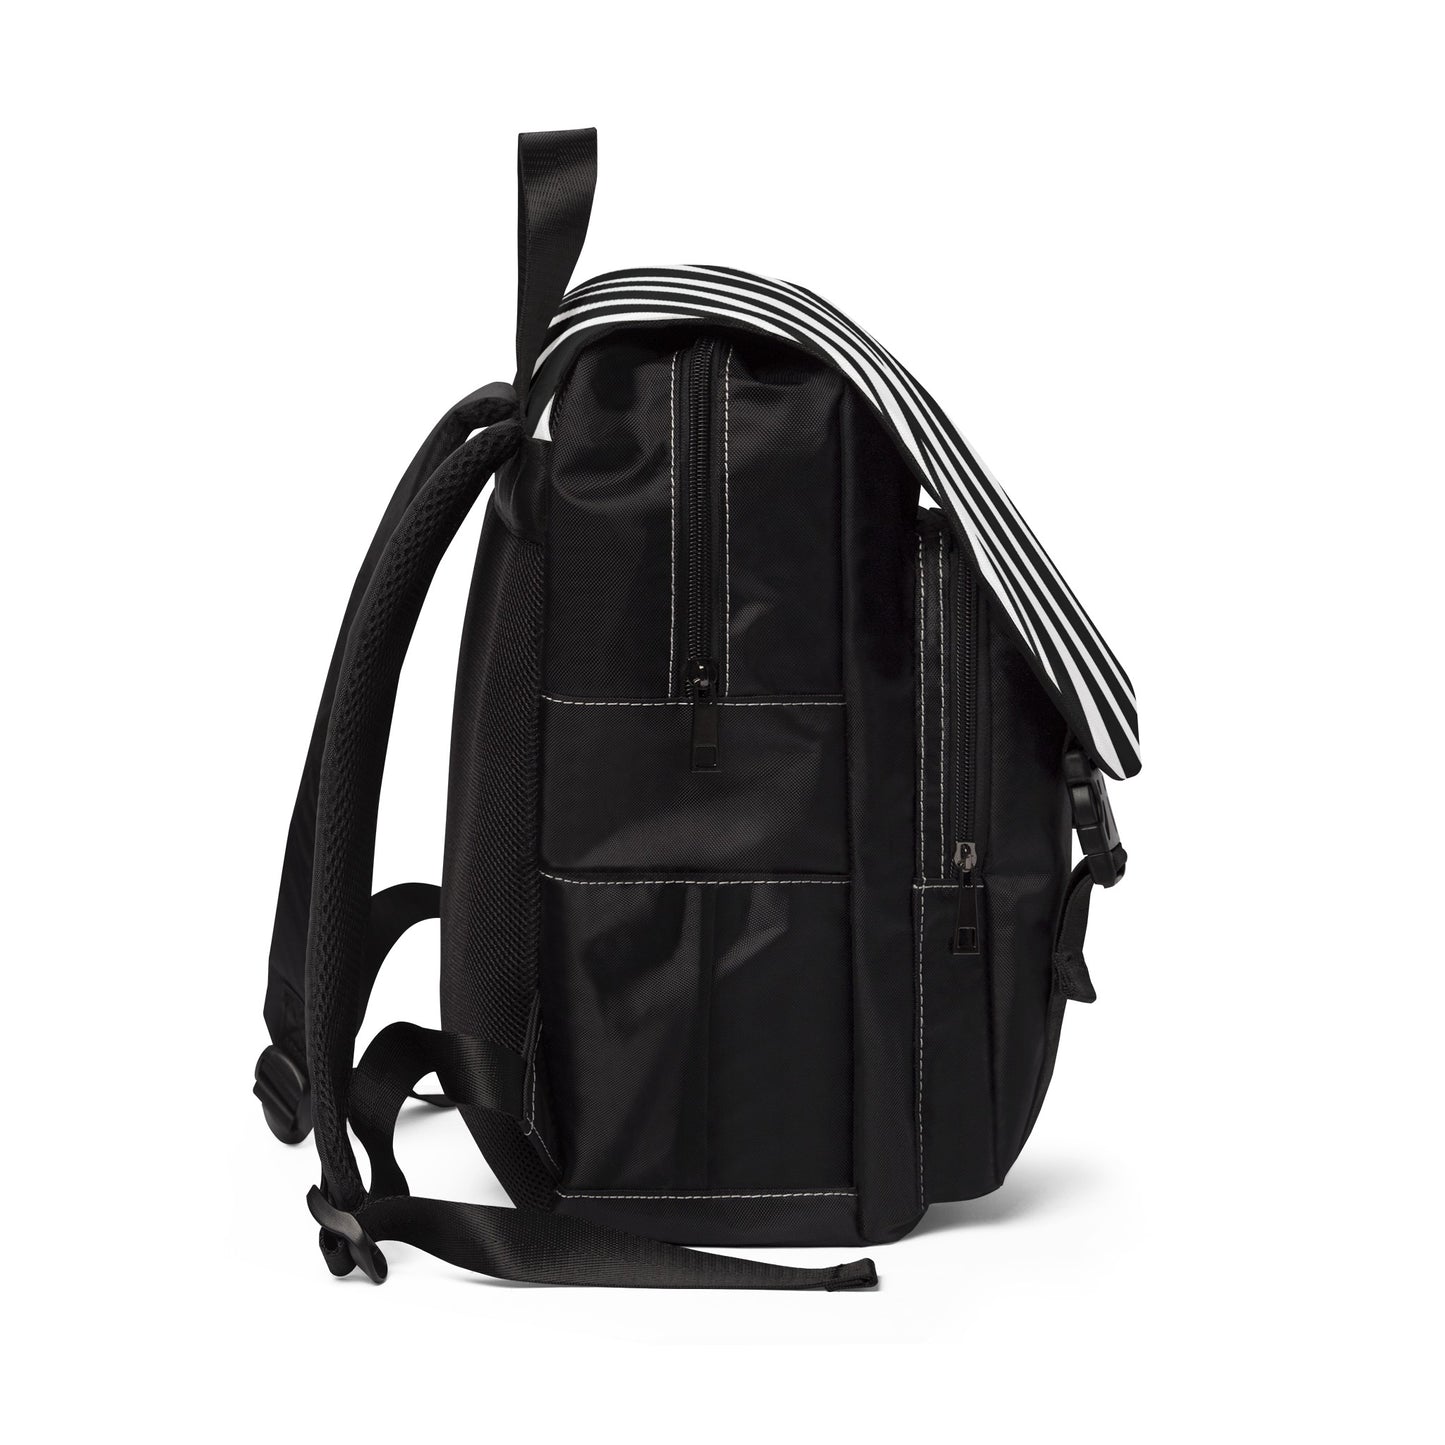 Unisex Casual Zebra Shoulder Backpack